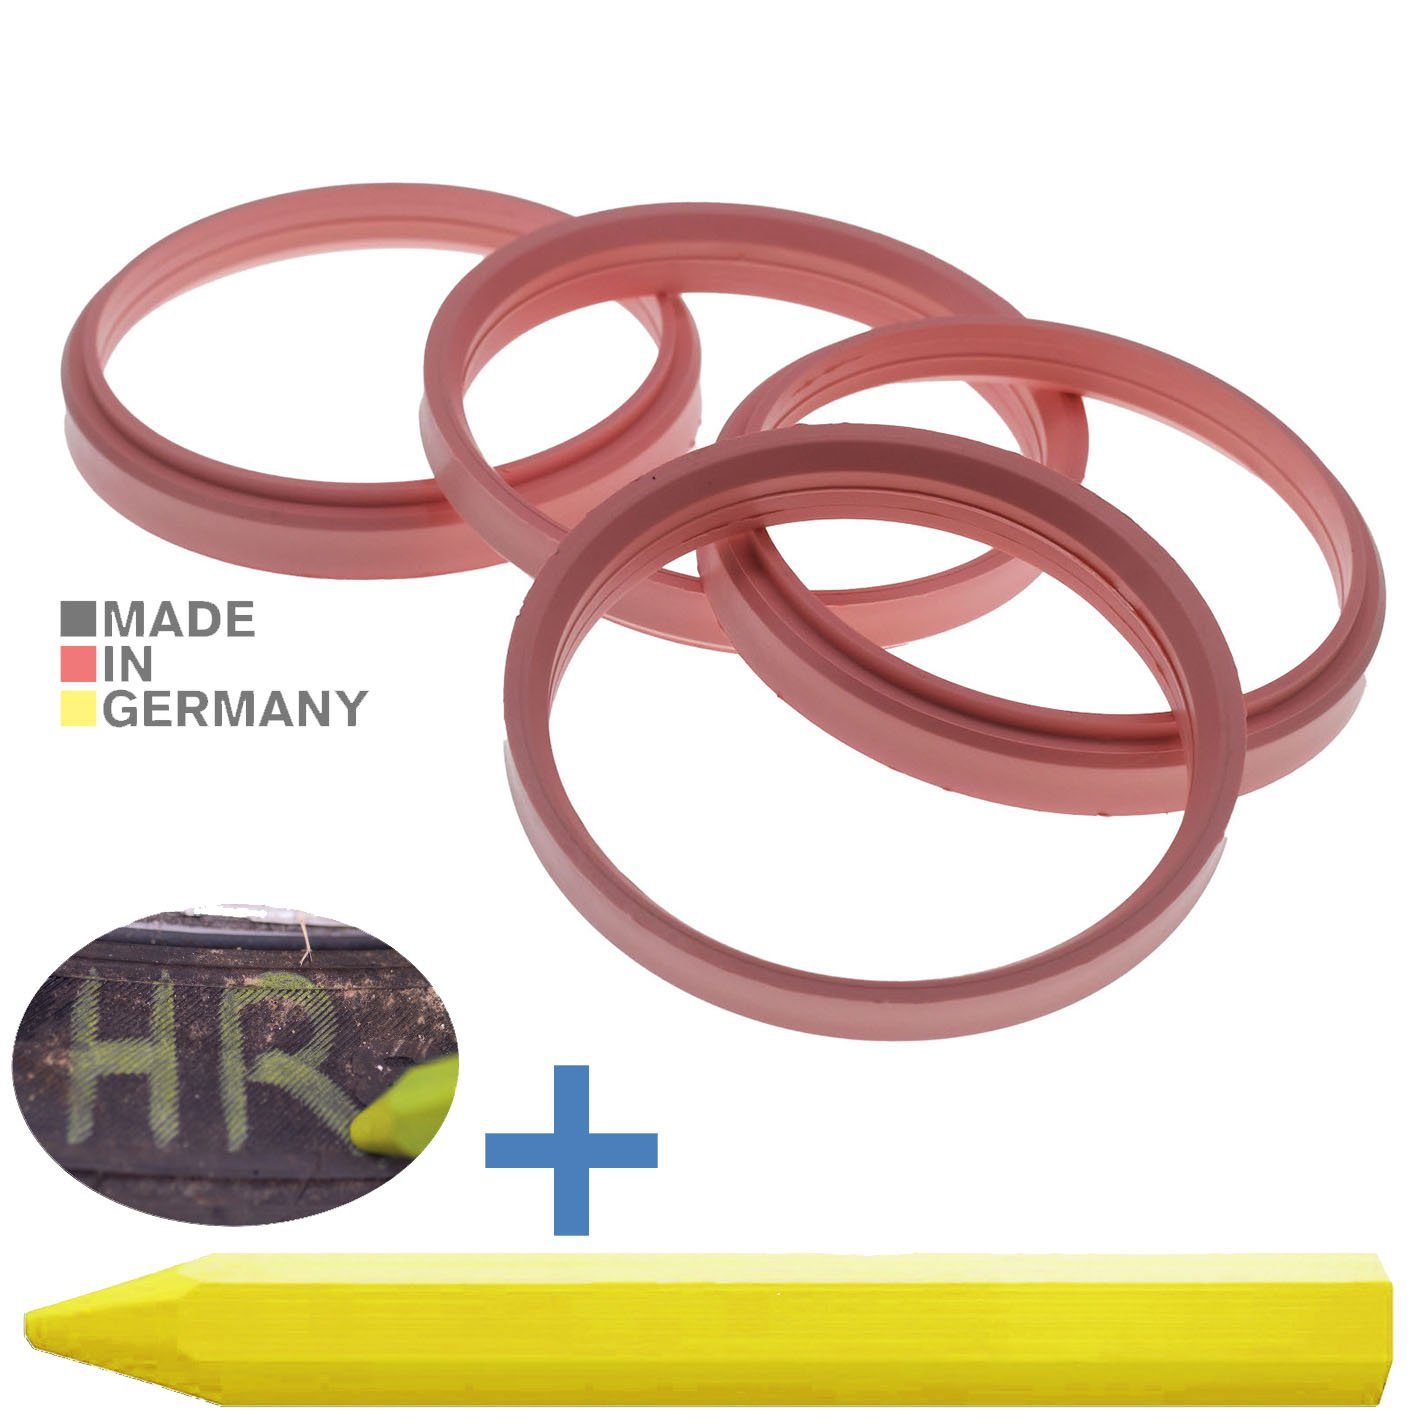 RKC Reifenstift 4X Zentrierringe Rosa Felgen Ringe + 1x Reifen Kreide Fett Stift, Maße: 76,0 x 66,5 mm